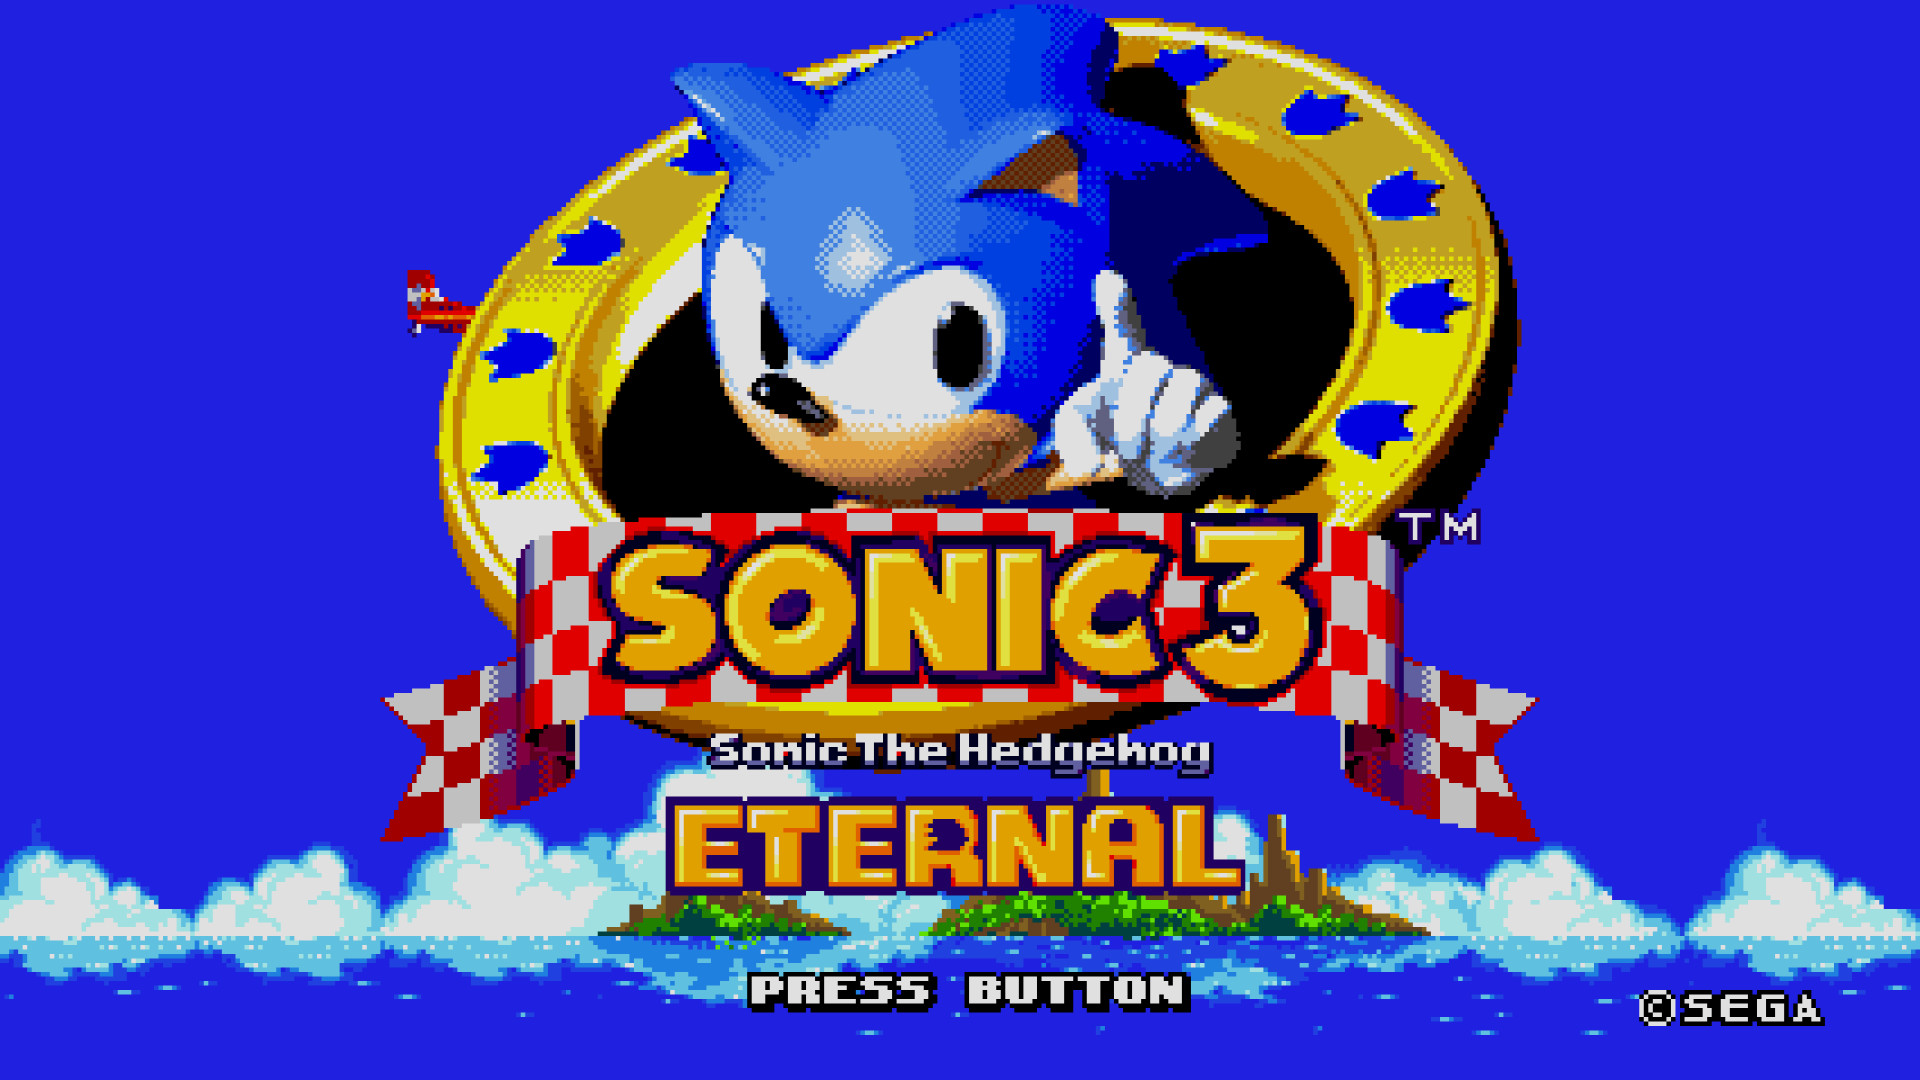 Sonic 3 mobile. Sonic 3 Sega Mega Drive. Игра Sonic the Hedgehog 3. Соник 3 игра сега. Sonic 3 и НАКЛЗ.